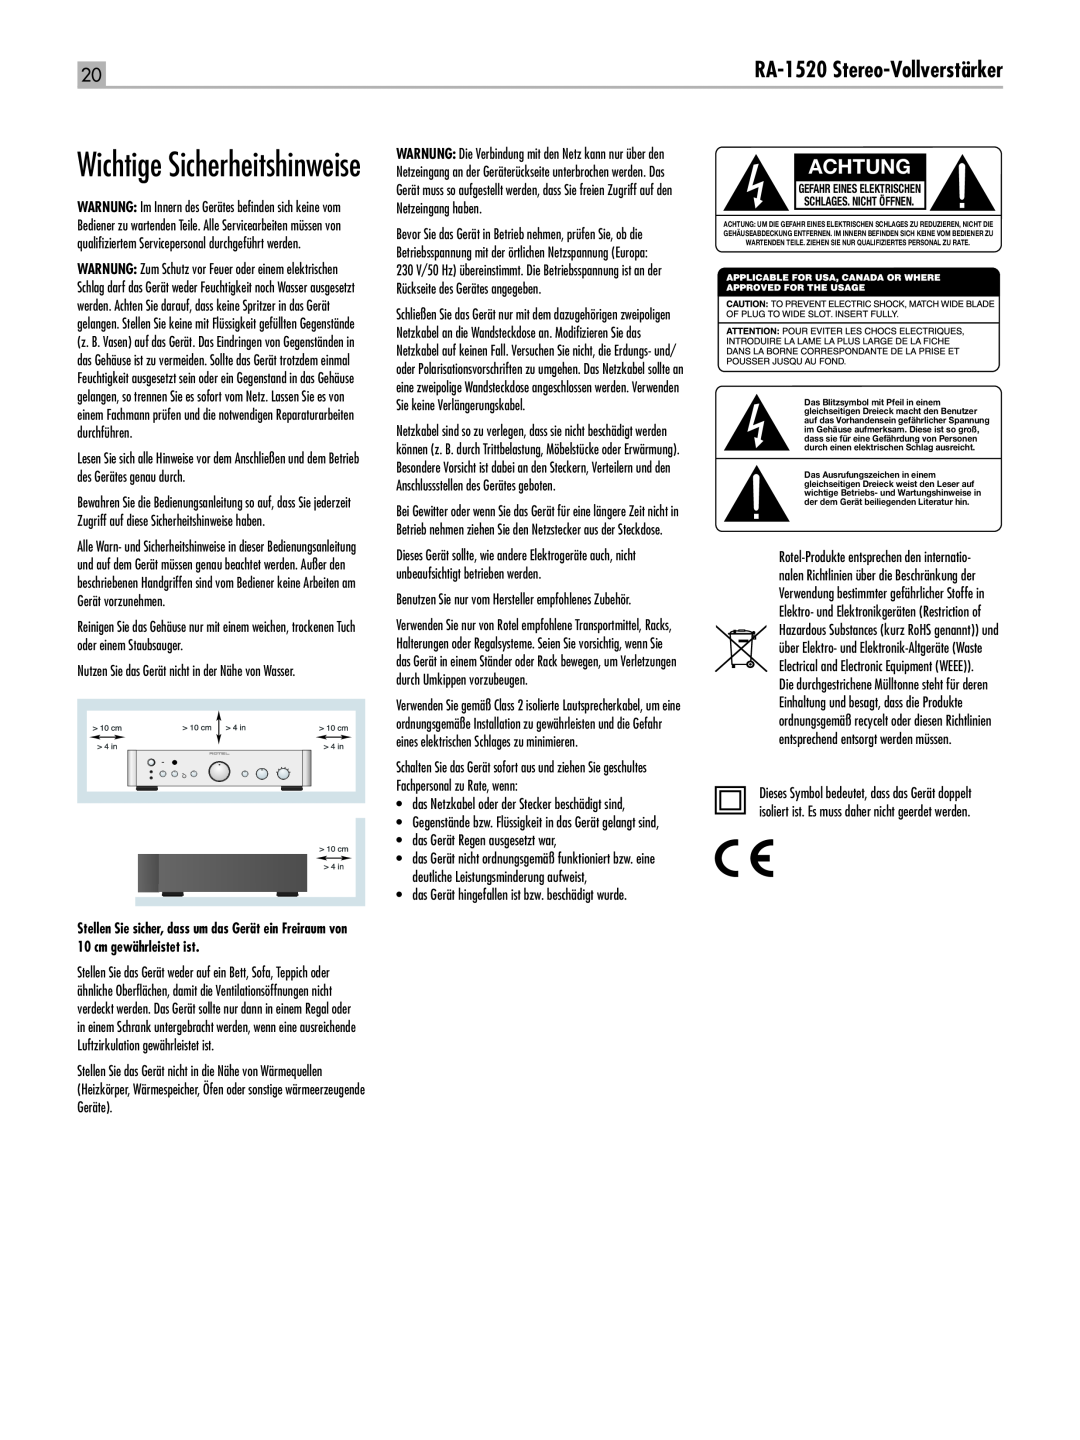 Rotel RA-1520 owner manual Wichtige Sicherheitshinweise, Achtung, RA‑1520 Stereo-Vollverstärker 